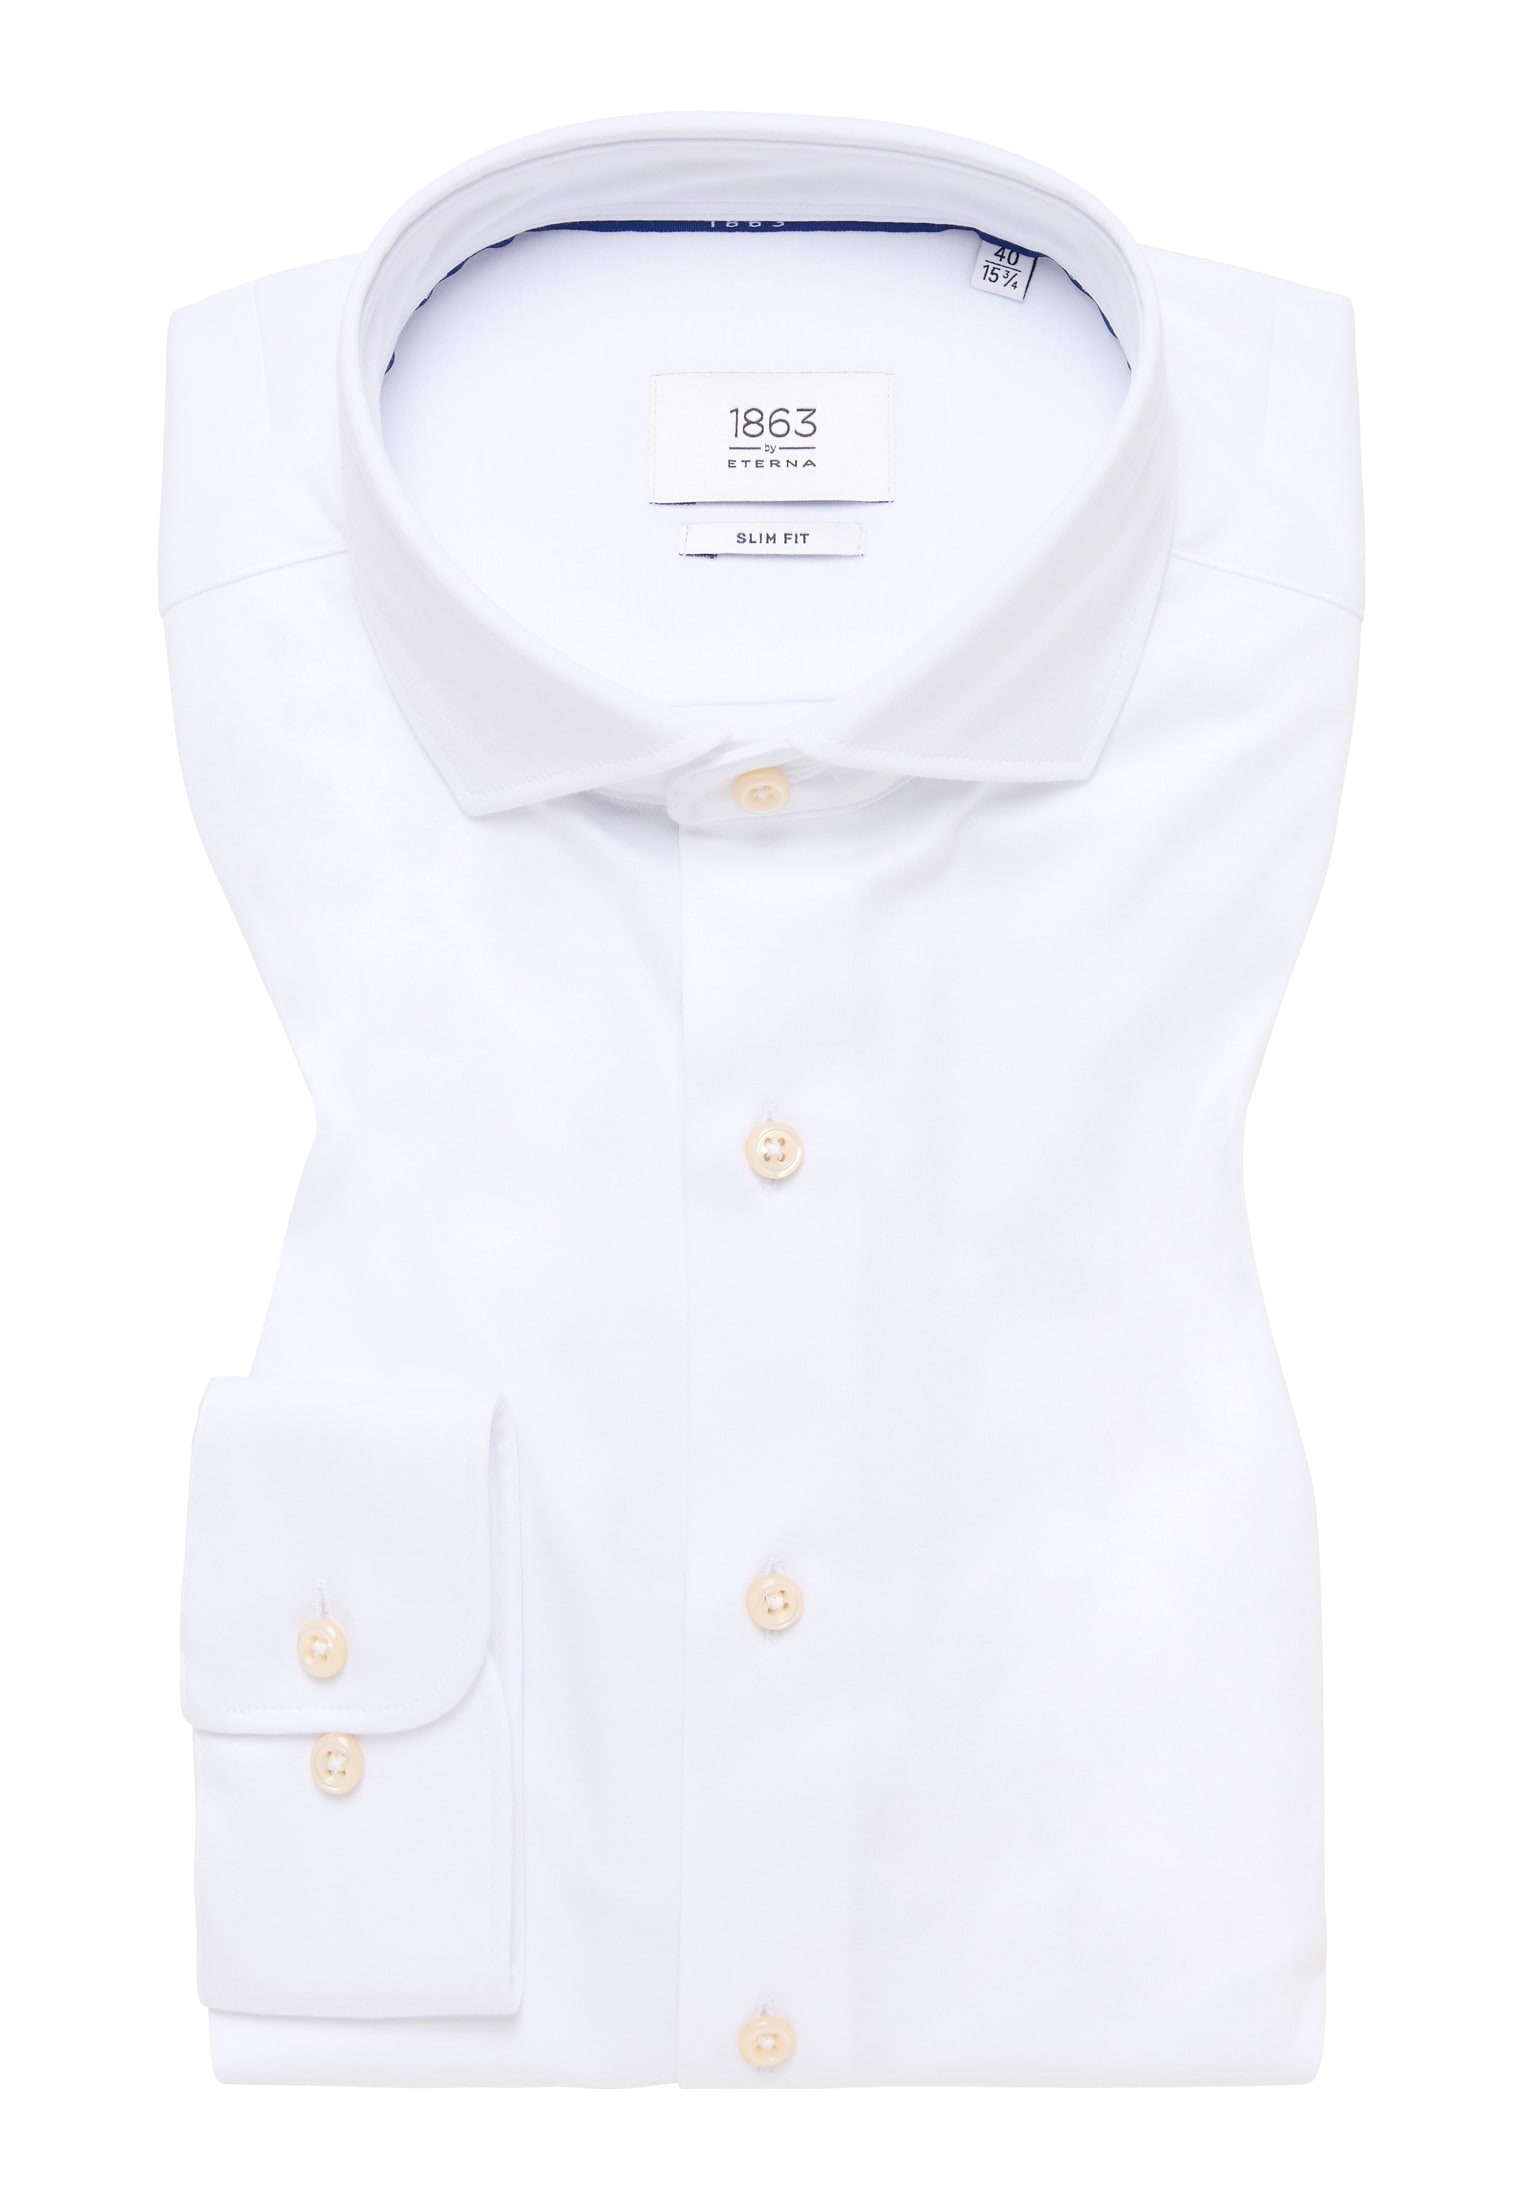 SLIM FIT Jersey Shirt in weiß unifarben | weiß | 40 | Langarm |  1SH00378-00-01-40-1/1